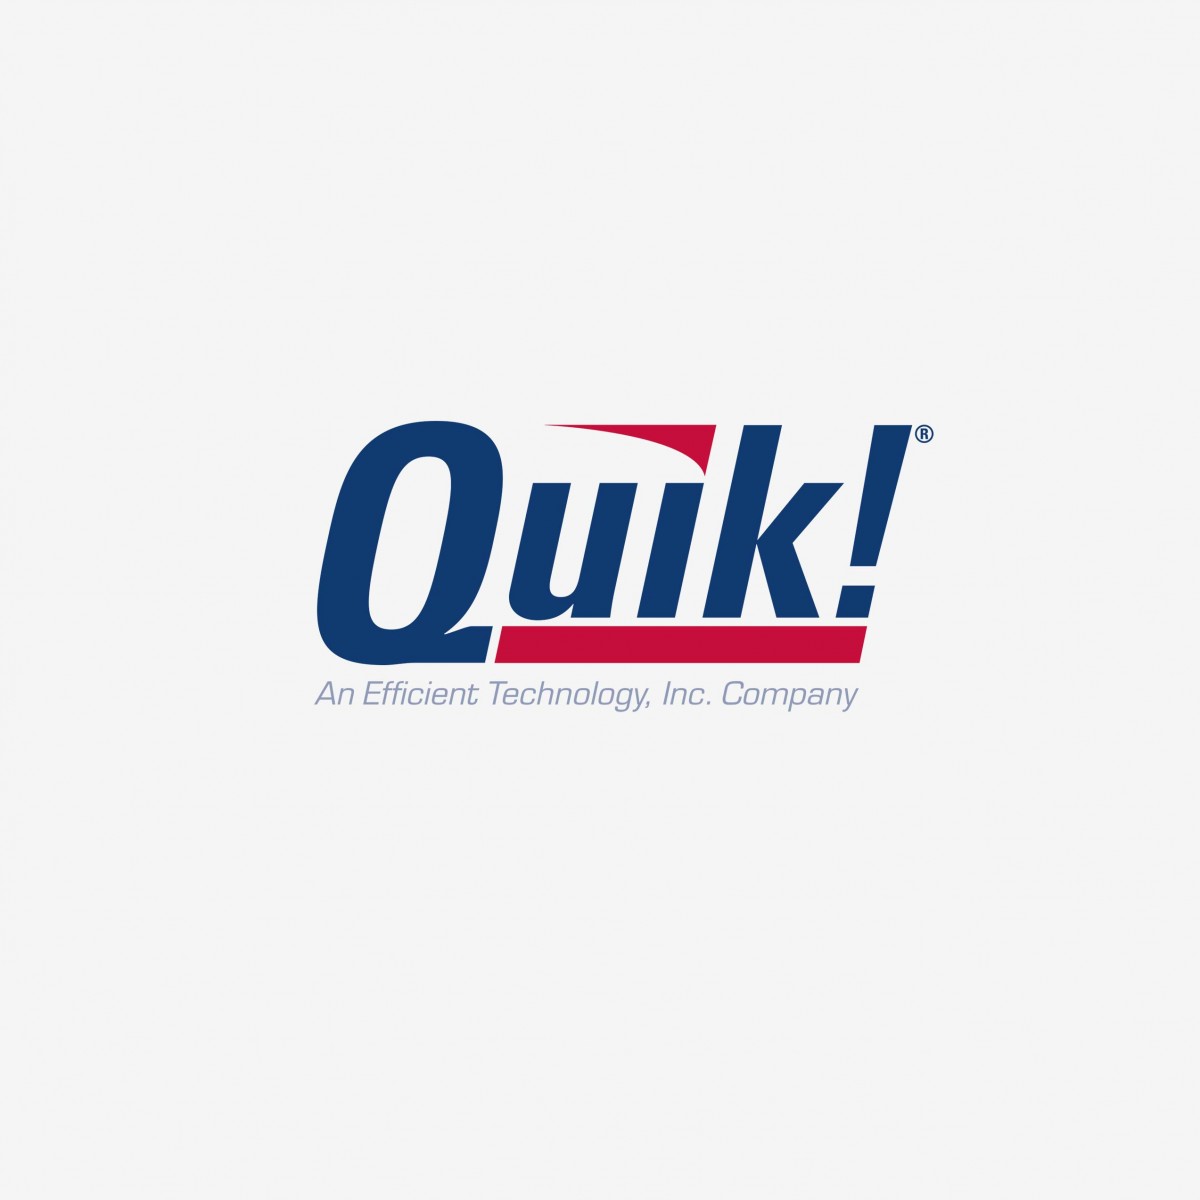 Quik! corporate identity